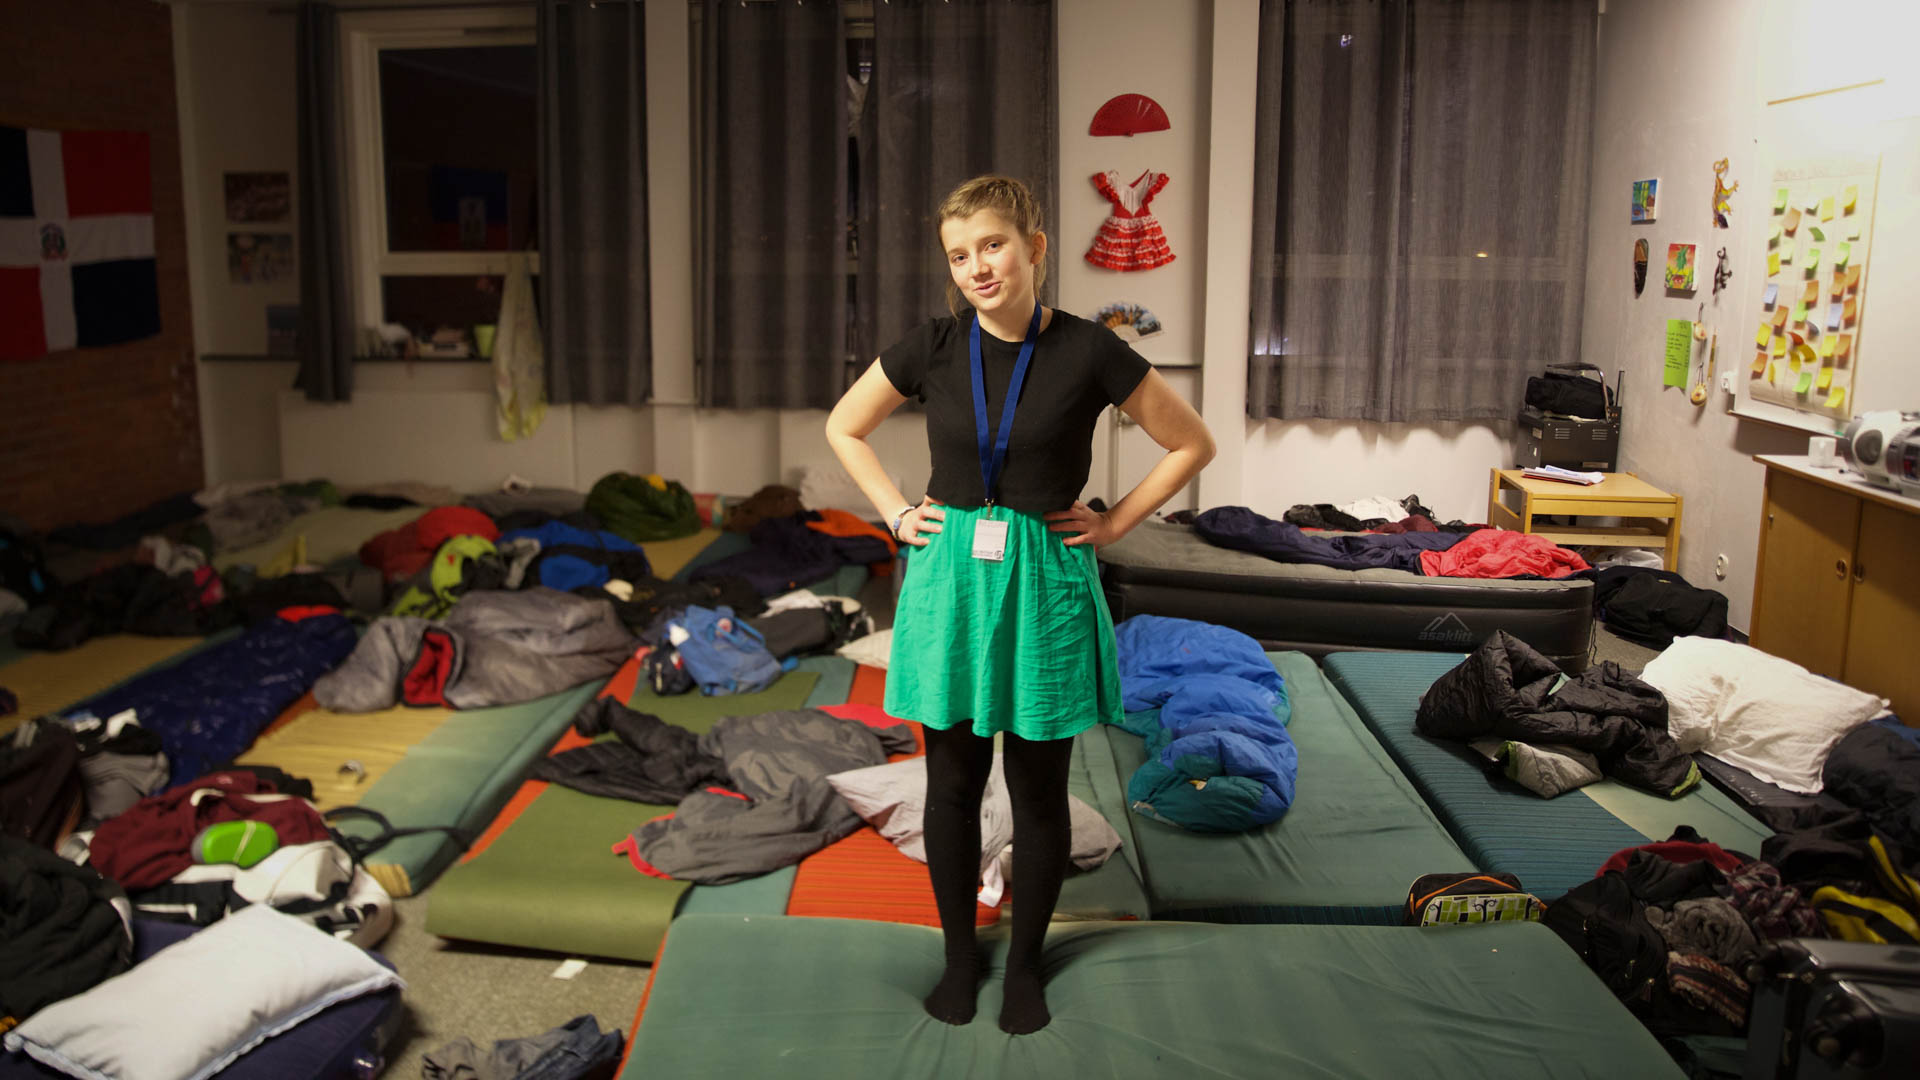 Amanda mimrer om tidene da hun sov på sovesal med kjekke gutter. (Foto: Anne Dorte Lunås, NRK)